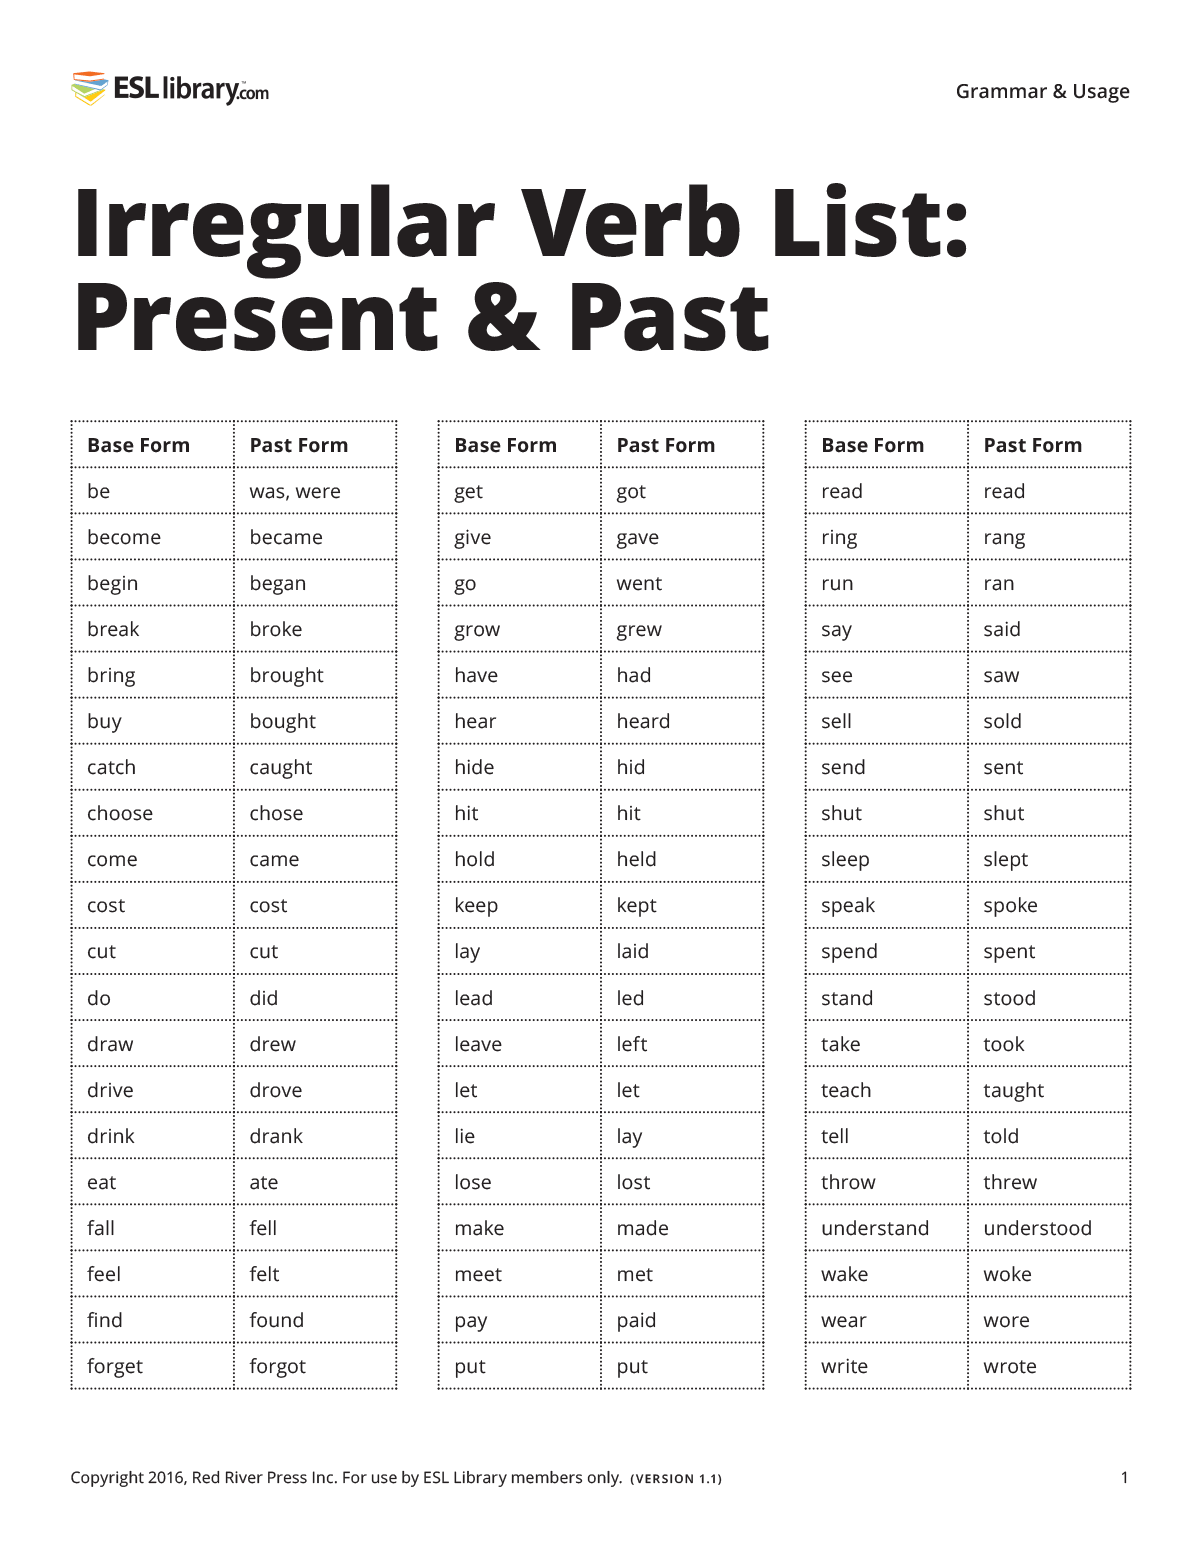 irregular past tense verbs list